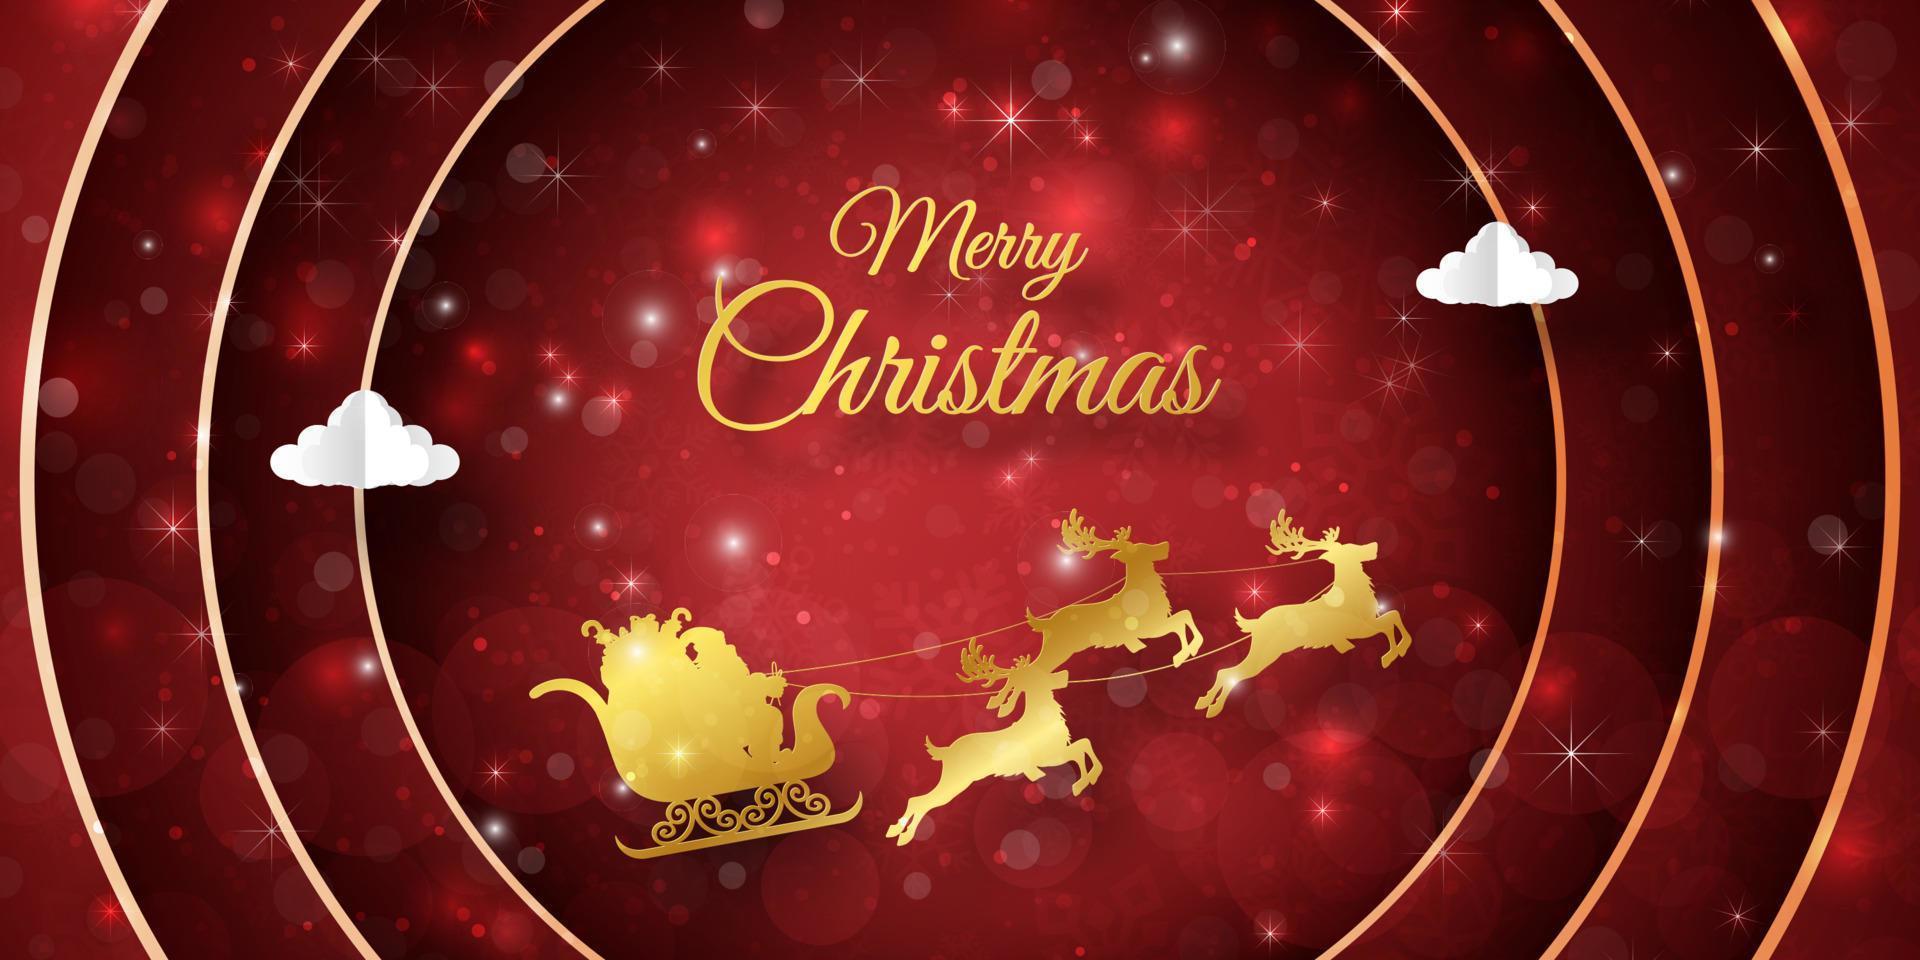 Feliz Natal e Feliz Ano Novo, cartão postal de banner de Natal do Papai Noel em um trenó com decoração de Natal vetor